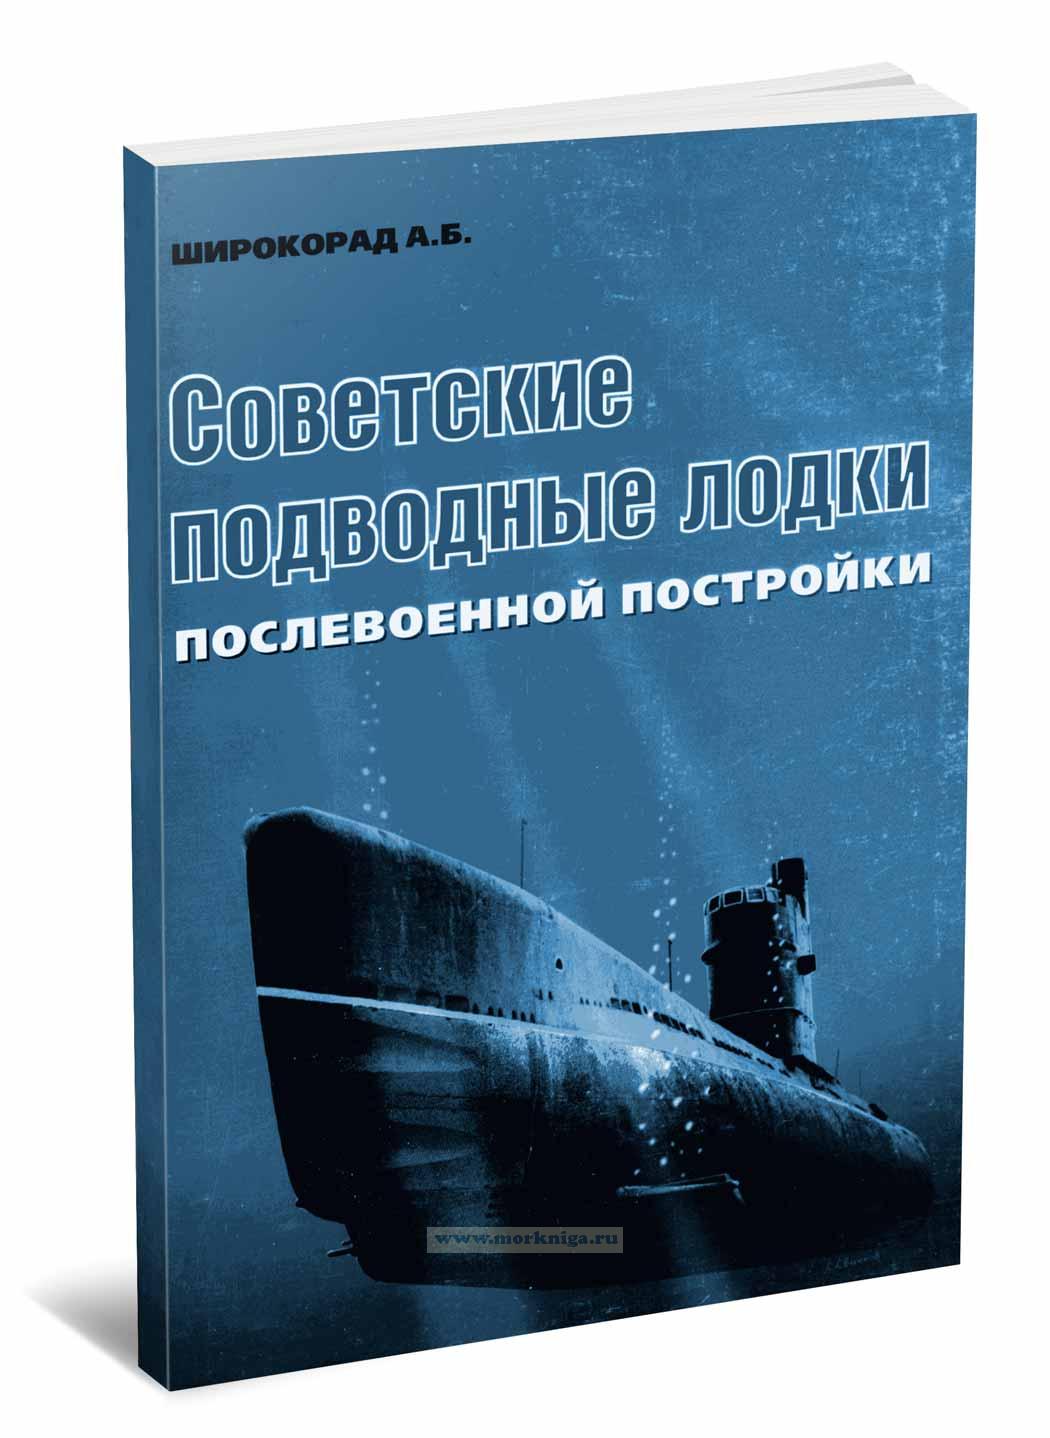 Советские подводные лодки, послевоенной постройки